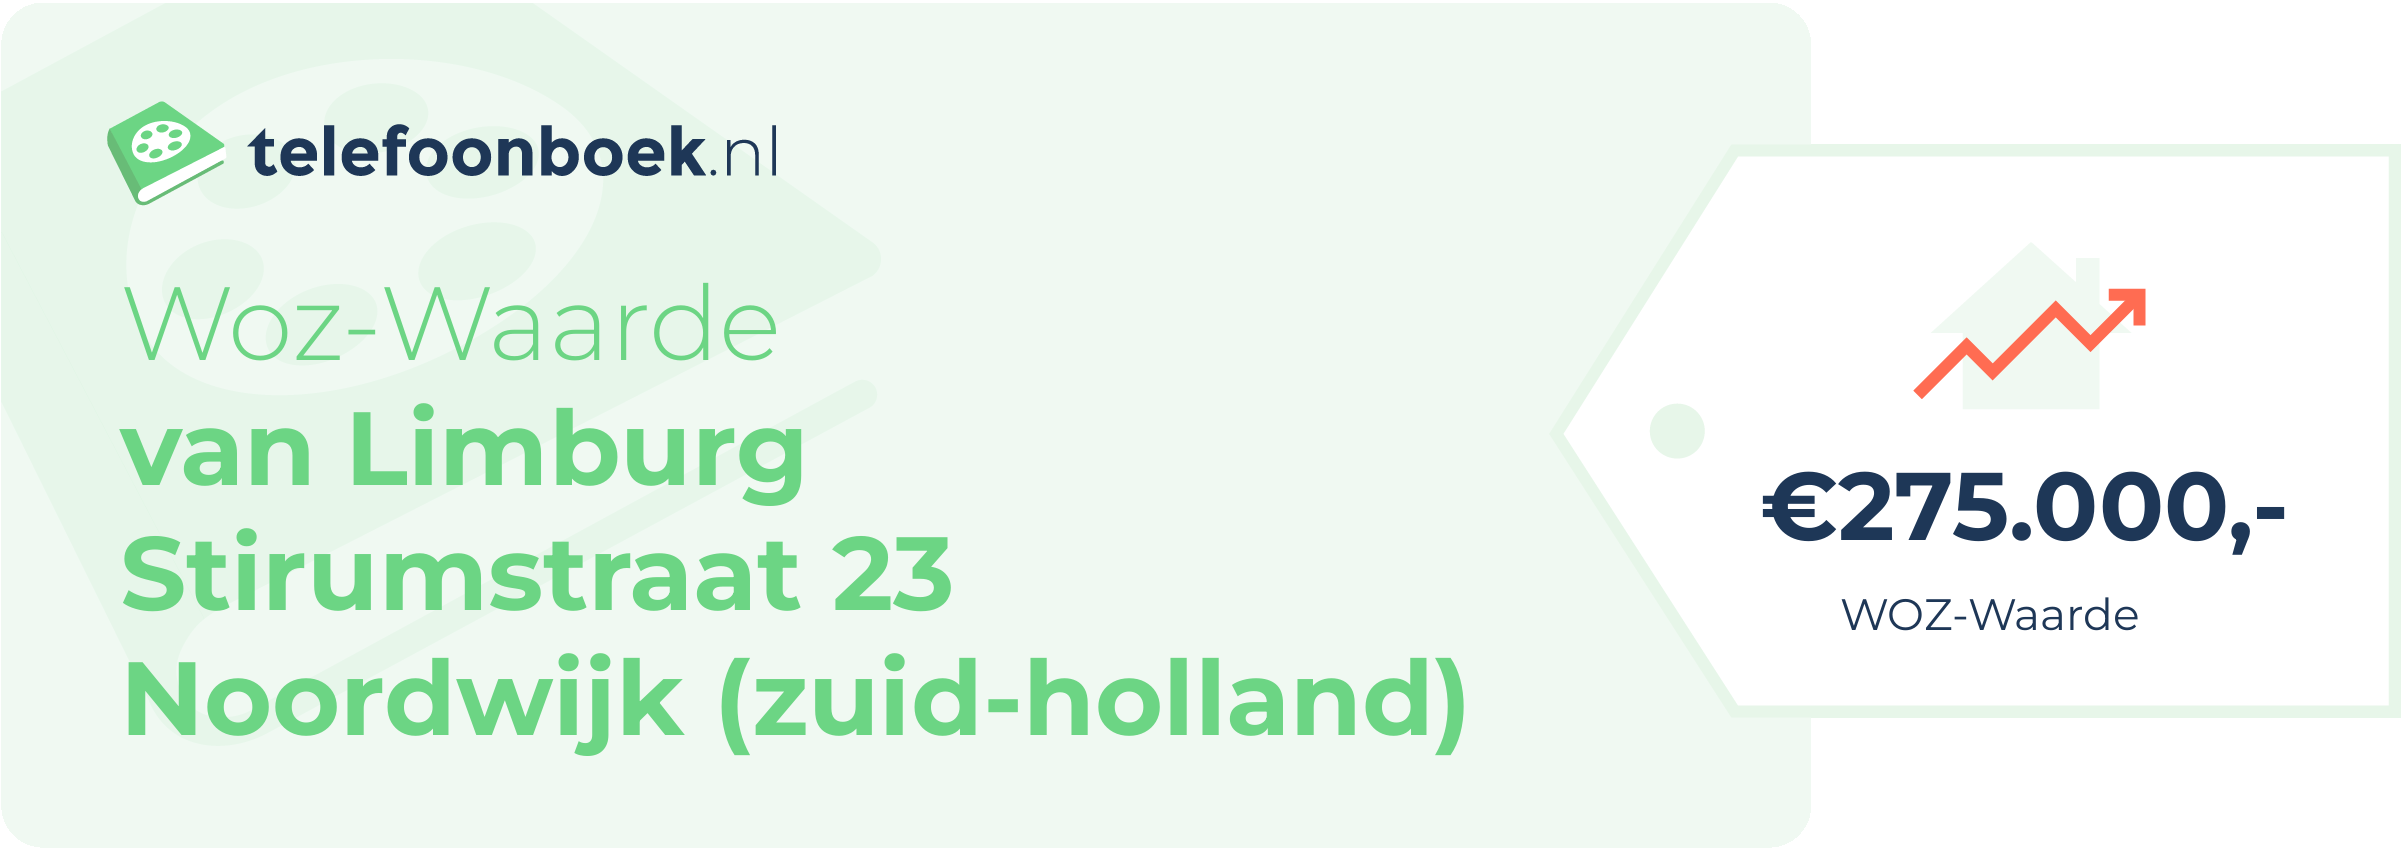 WOZ-waarde Van Limburg Stirumstraat 23 Noordwijk (Zuid-Holland)